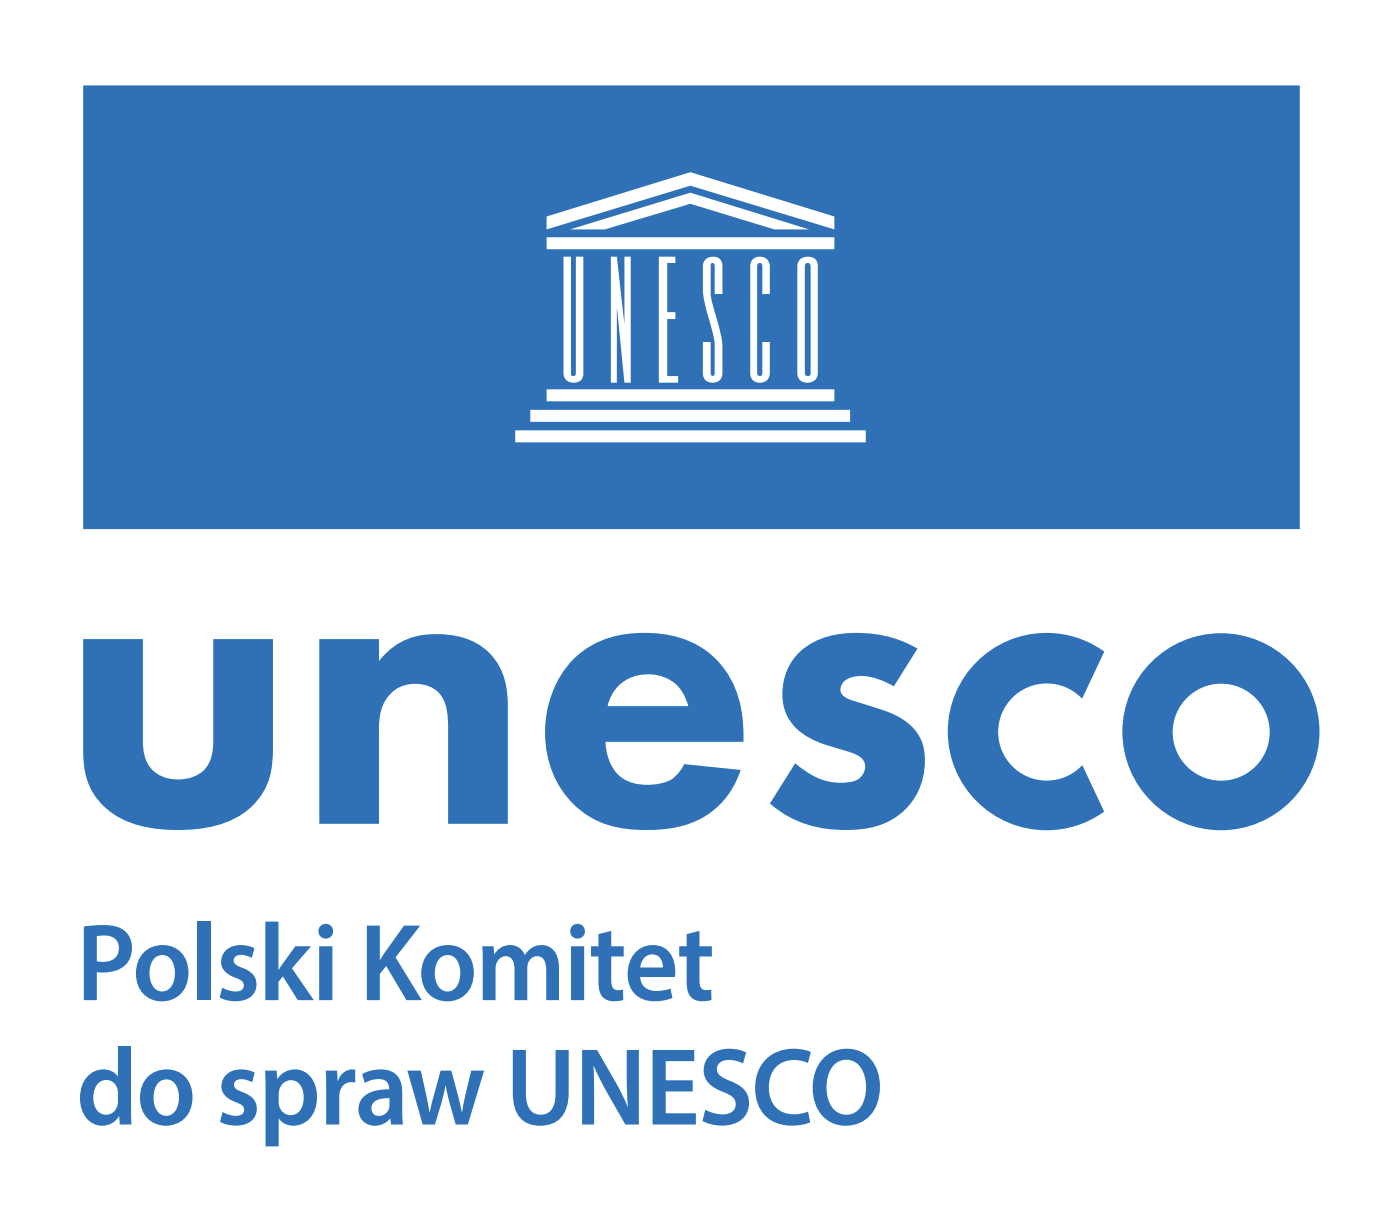 Polski Komitet do spraw UNESCO